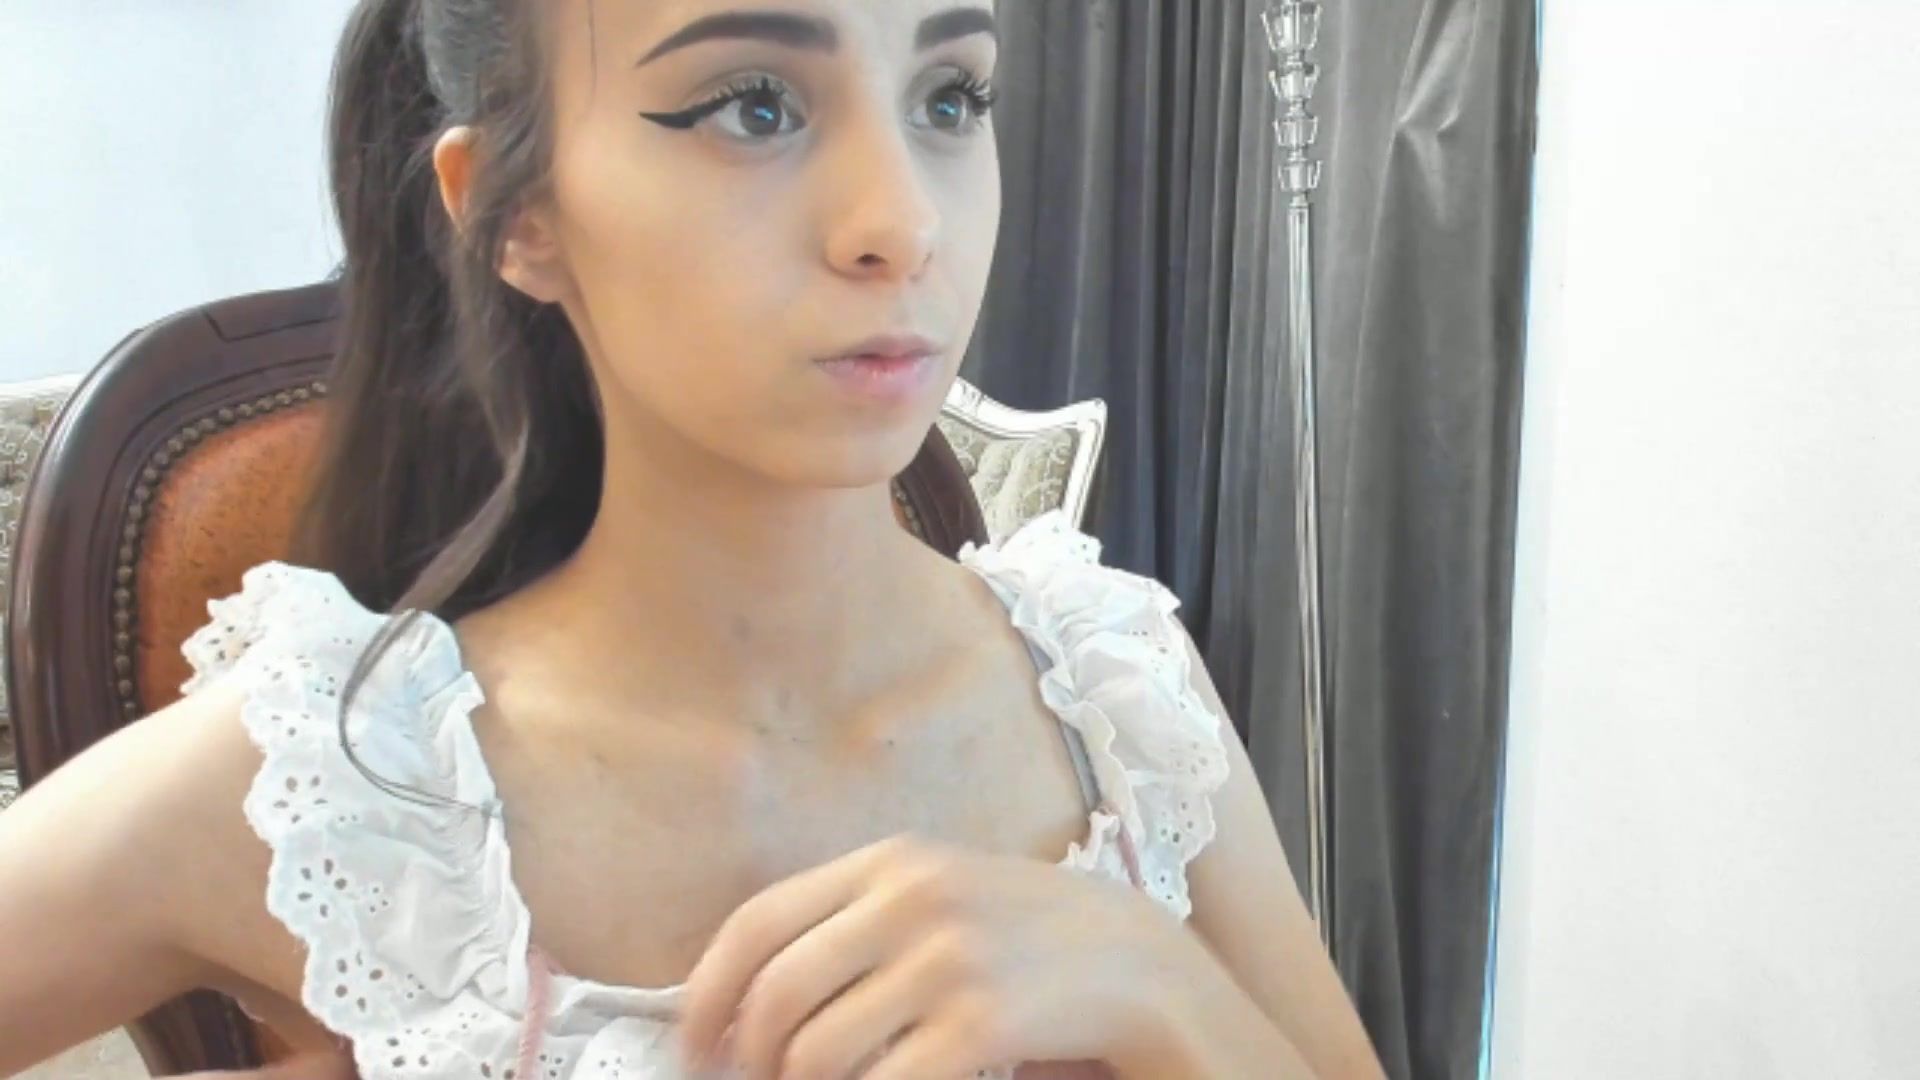 Rule34 pretty brunette girl next door solo on webcam Hard